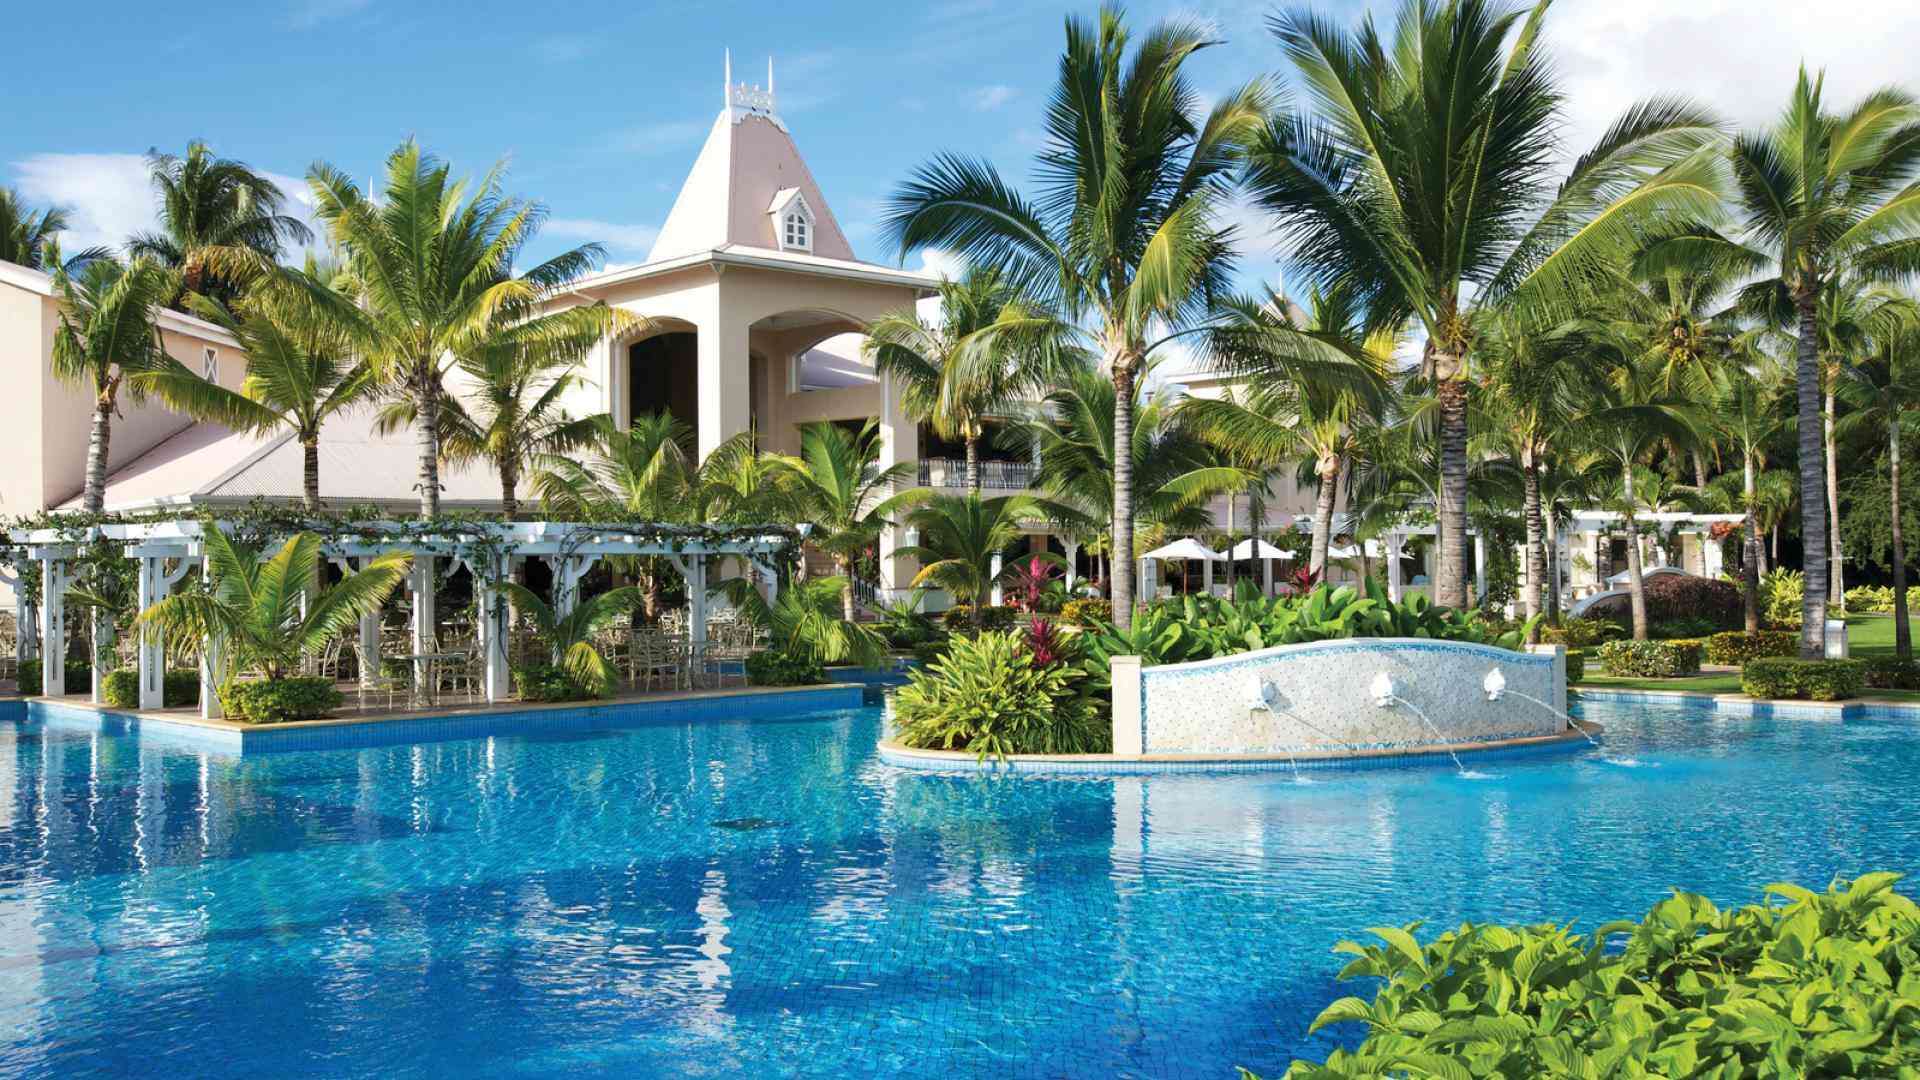 Sugar Beach Hotel Mauritius